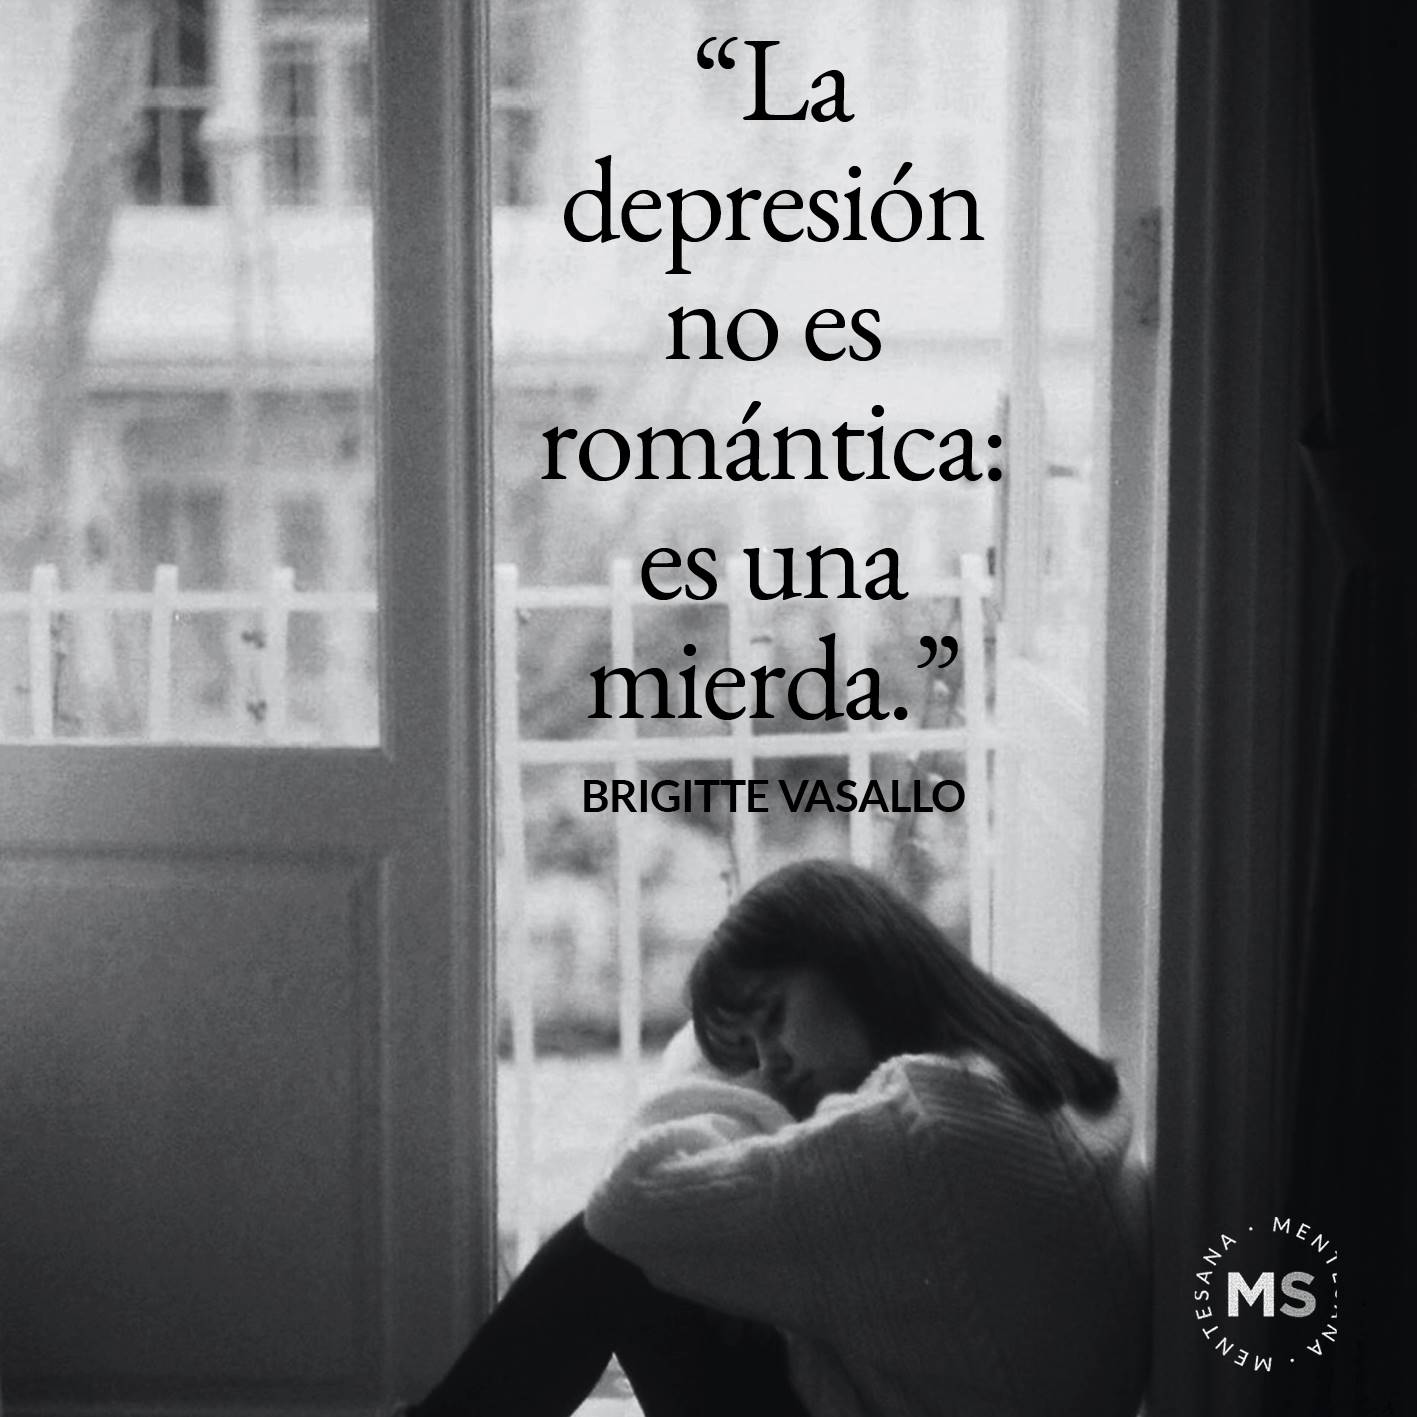 FRASES DIA DE LA DEPRESION4. “La depresión no es romántica: es una mierda.” Brigitte Vasallo 